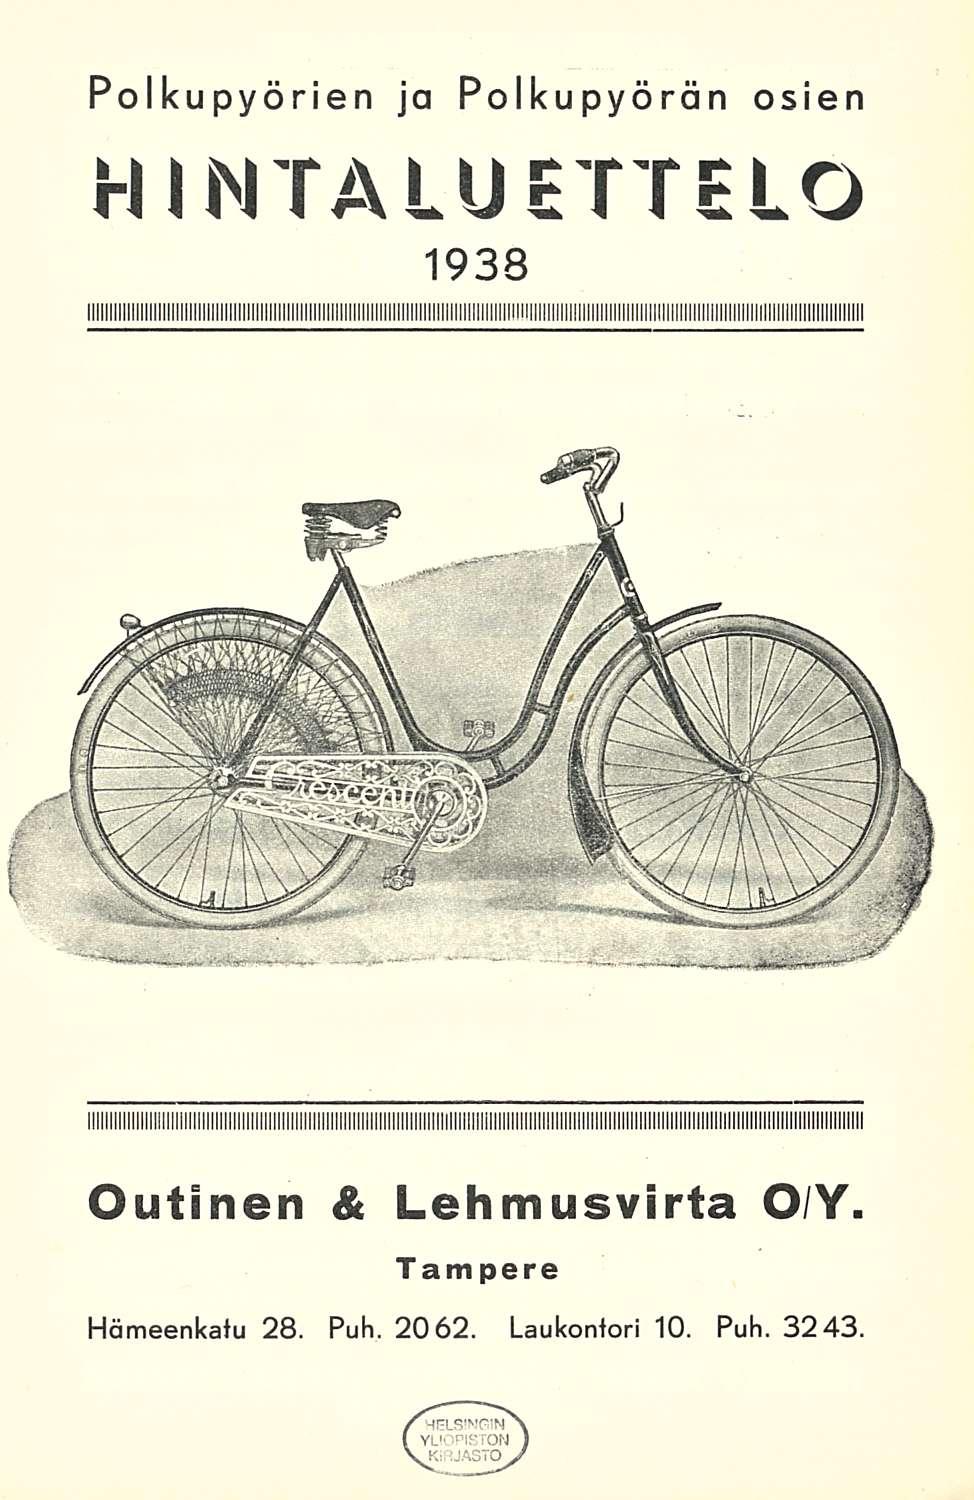 Polkupyörien ja polkupyörän osien luettelo 1938 Outinen &